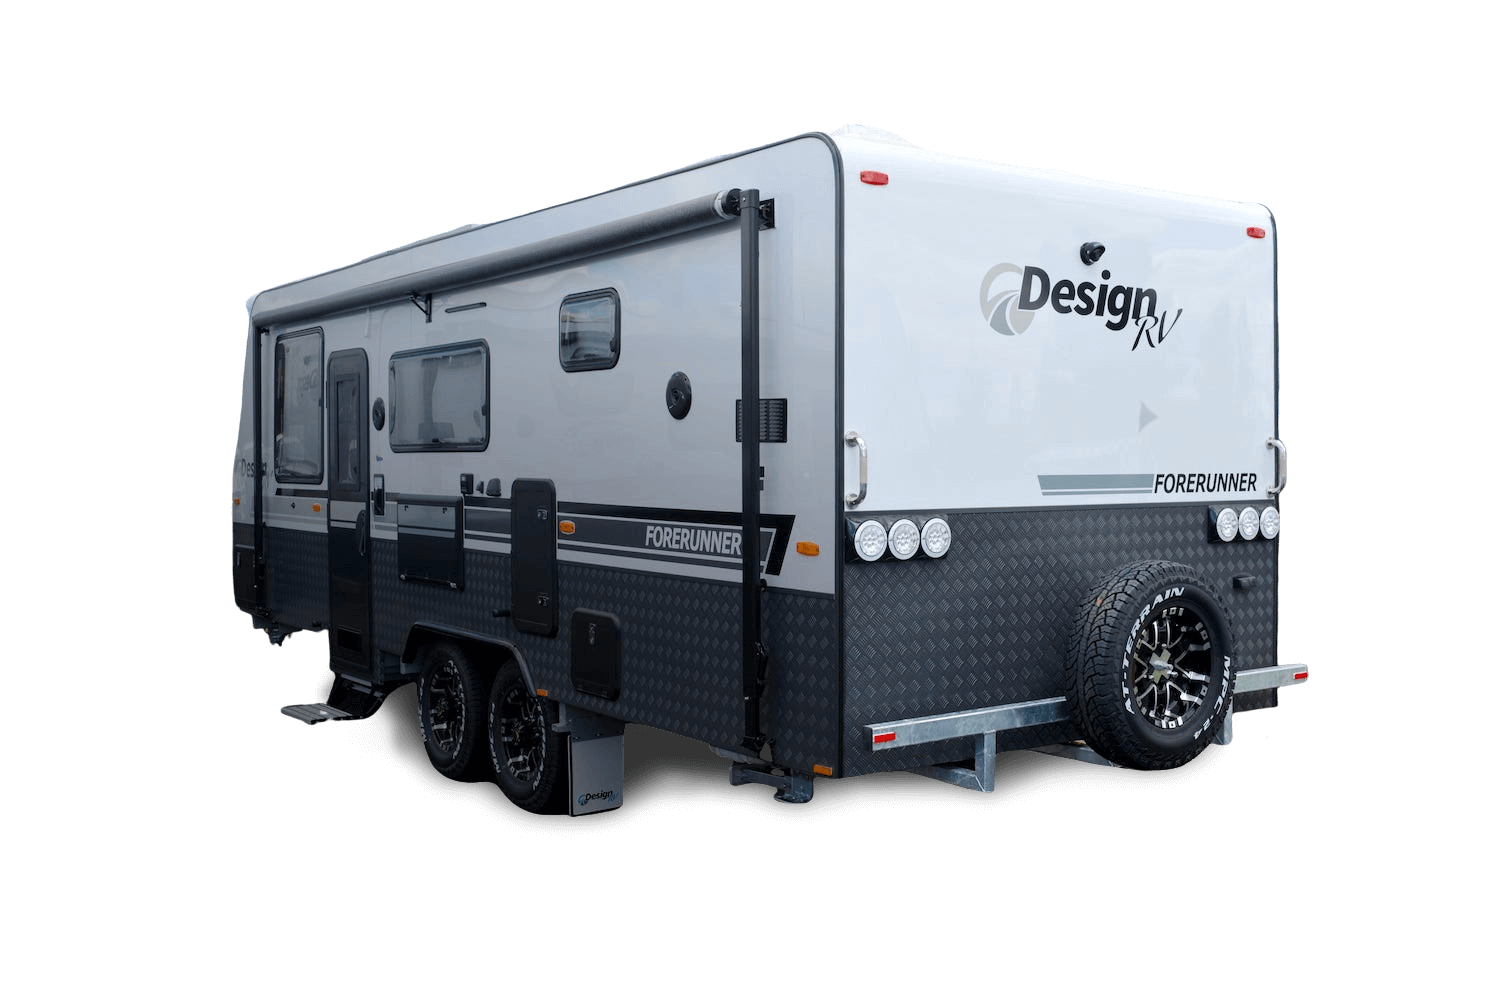 Design RV Forerunner Caravans